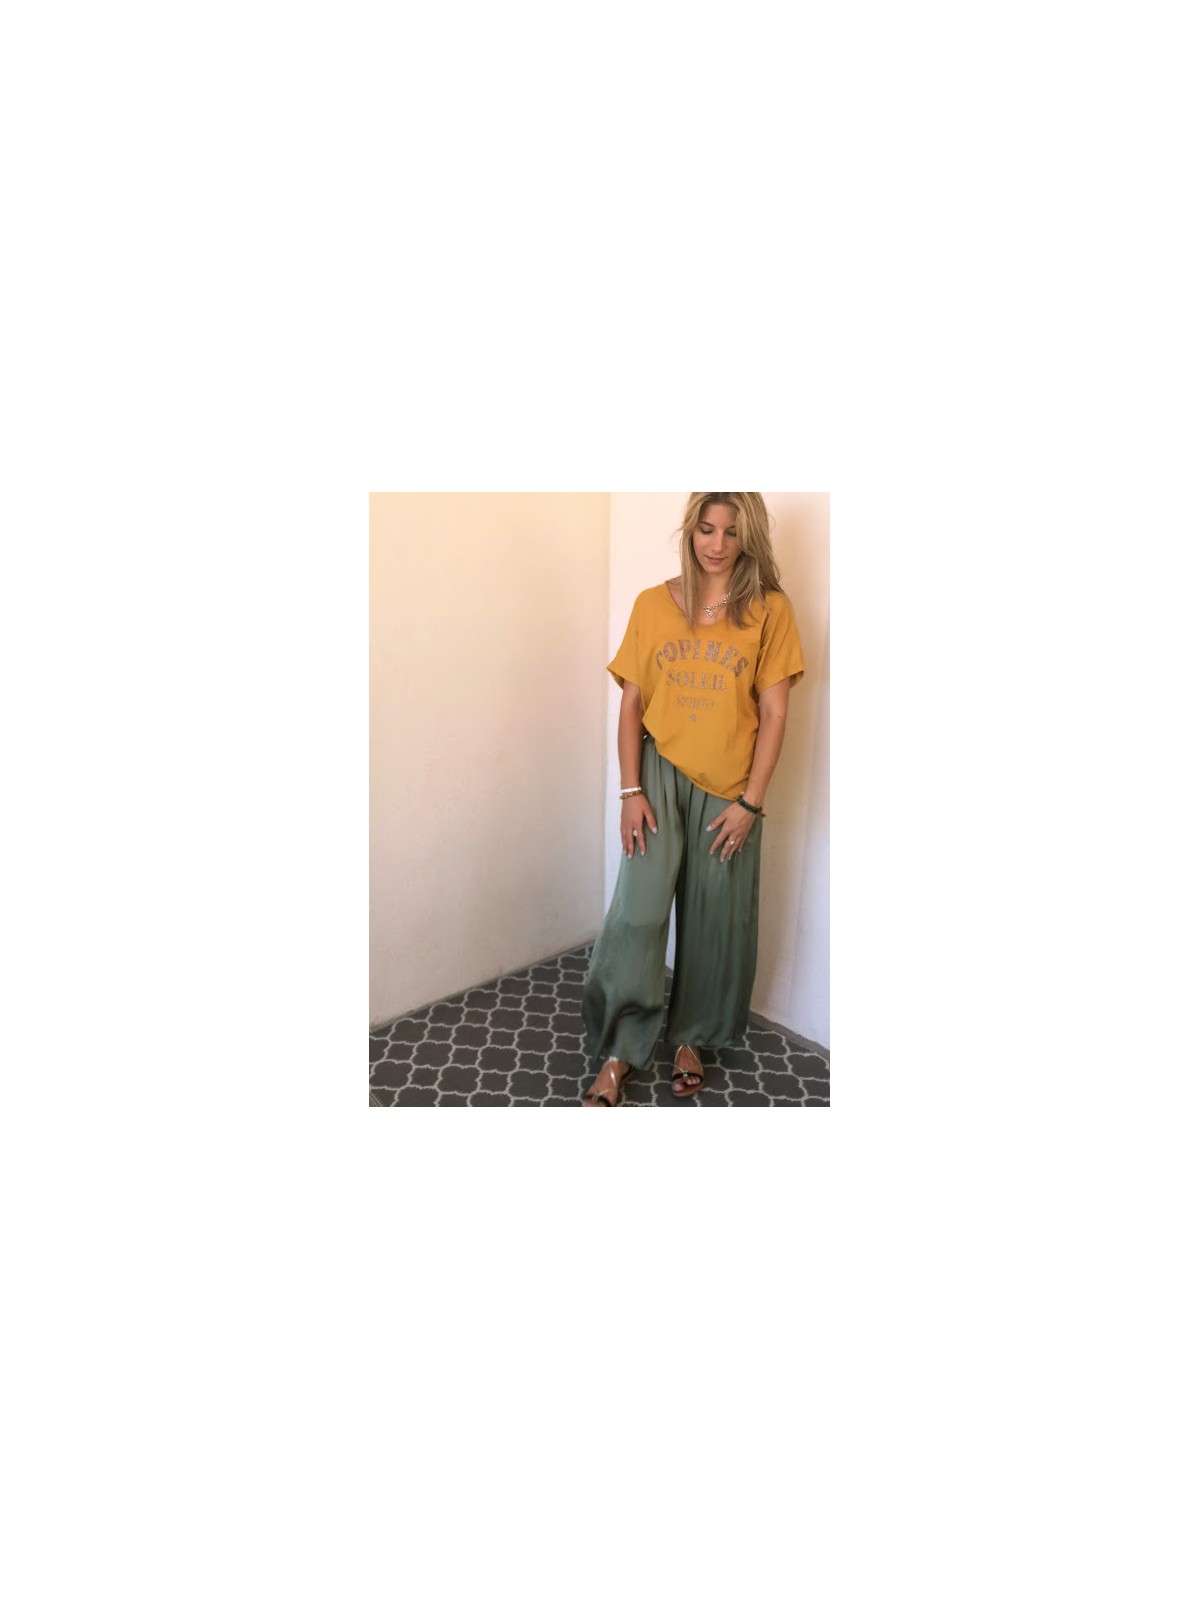 T-shirt moutarde inscriptions dorées   Mojito |1 vue de face porté entière |Tilleulmenthe boutique de mode femme en ligne